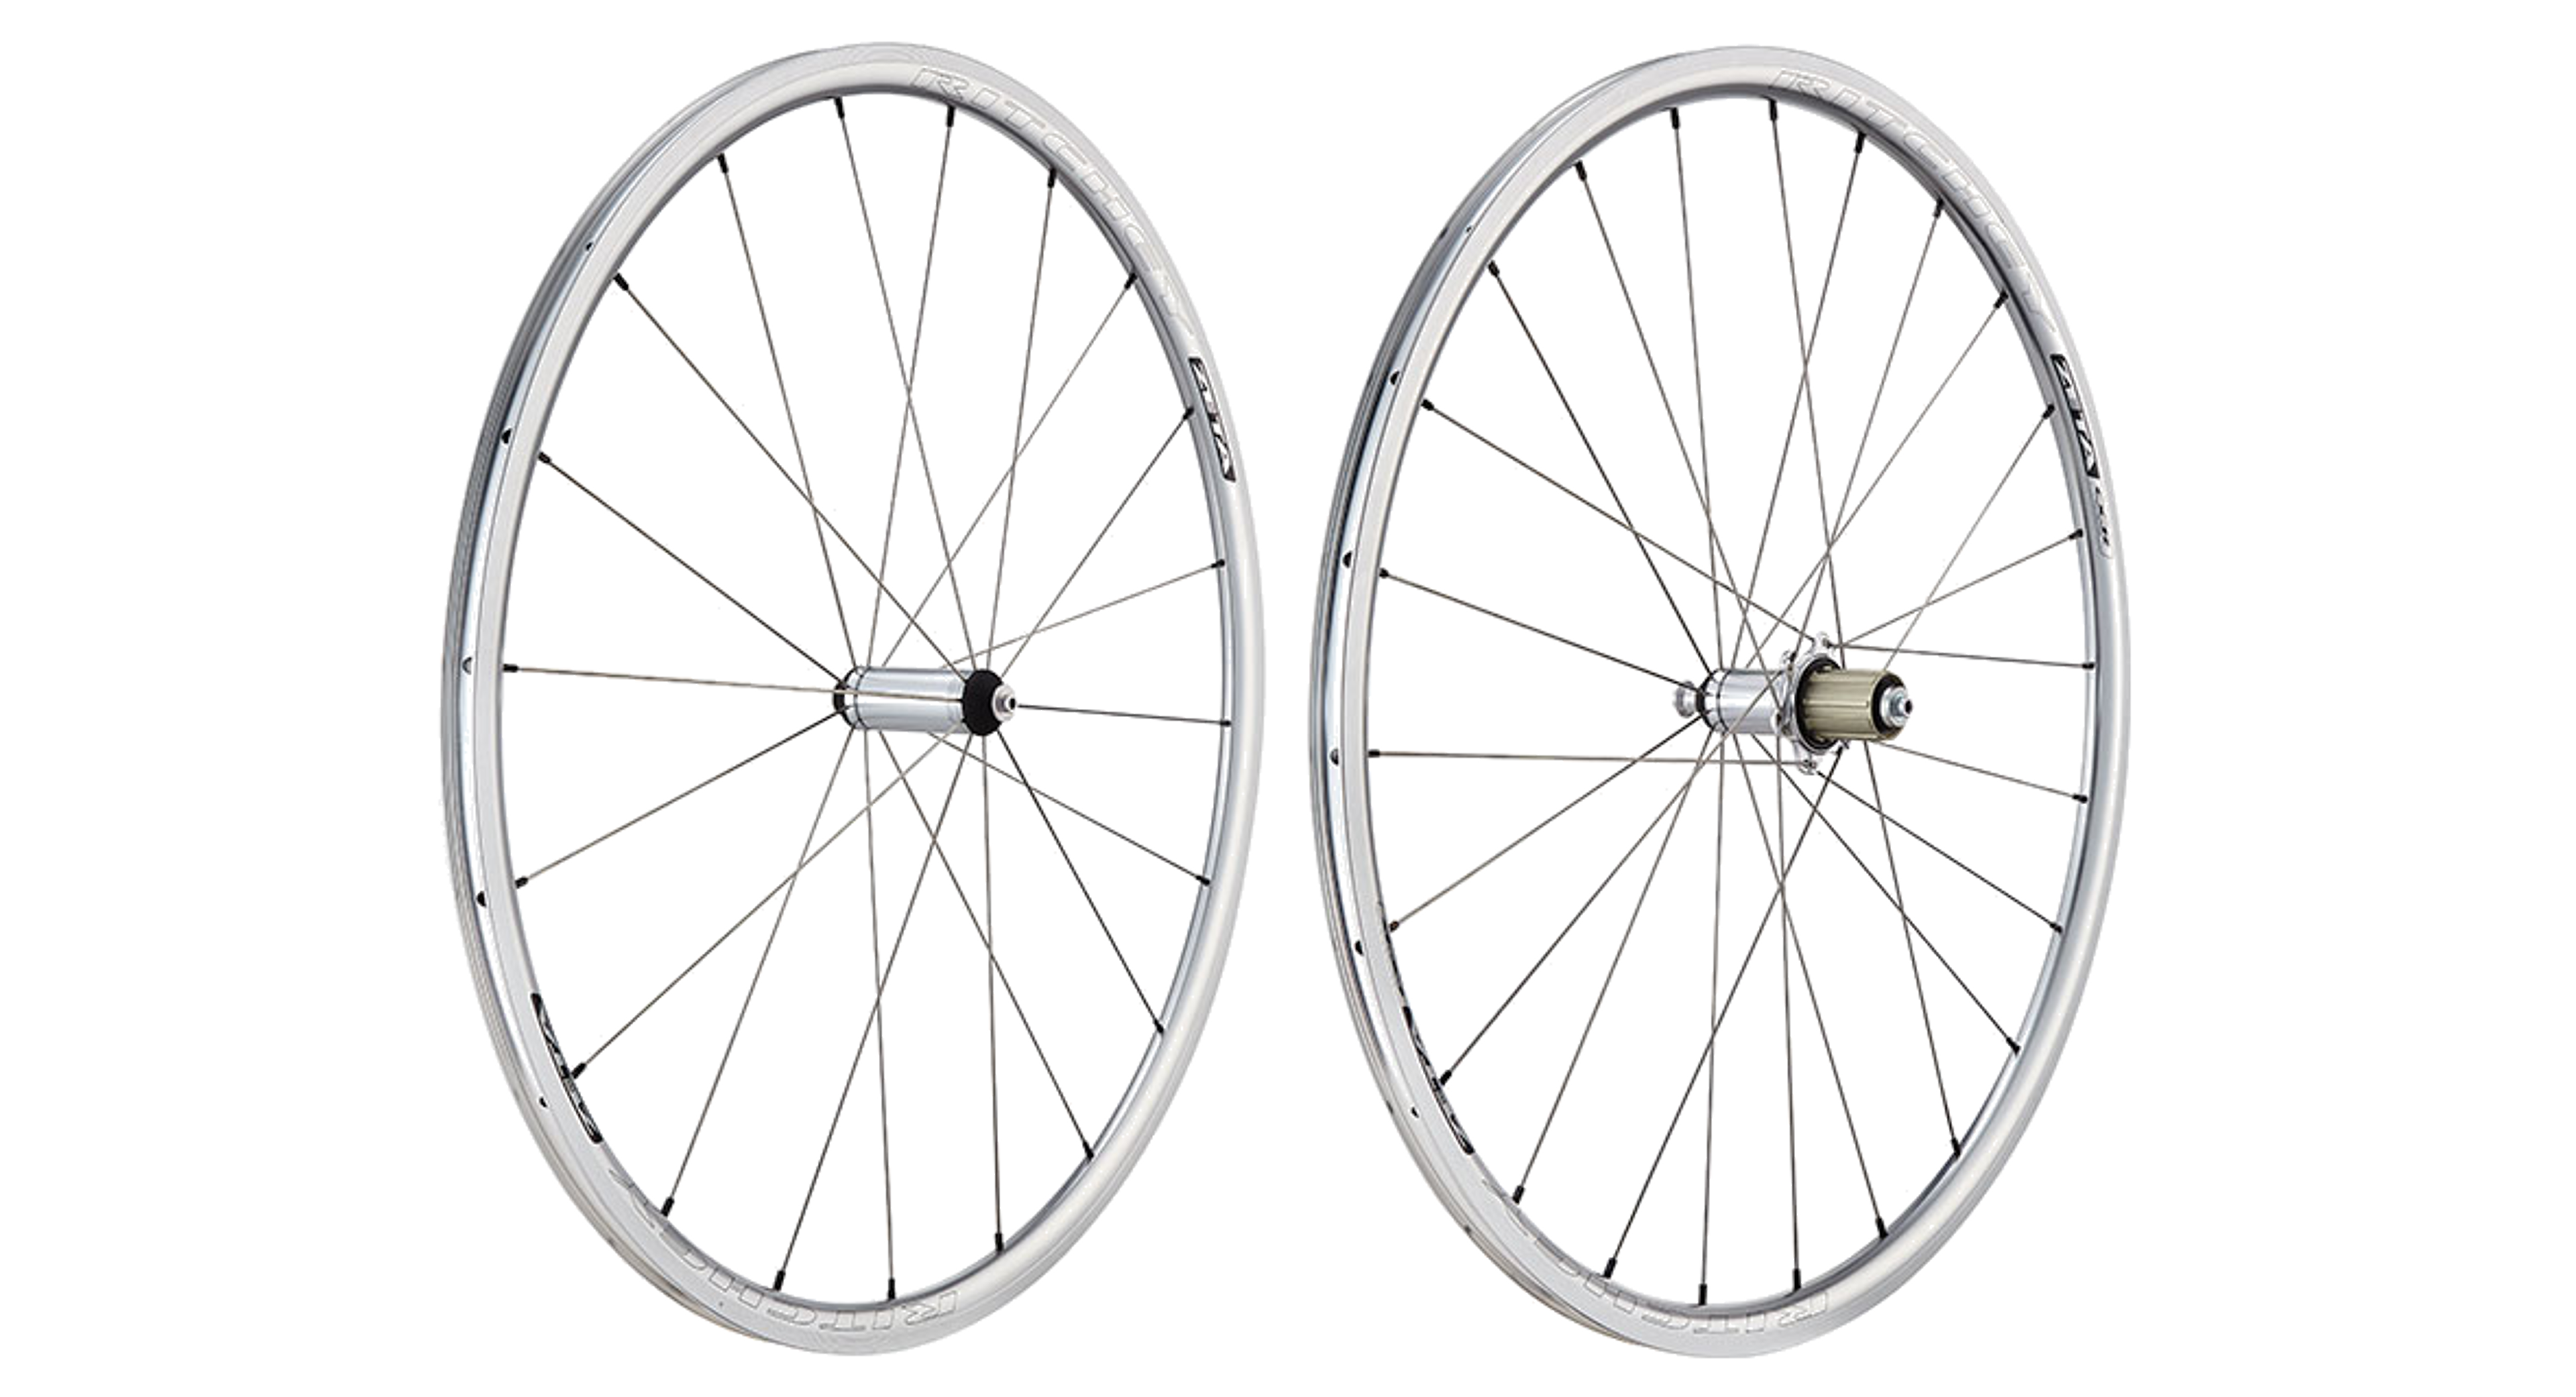 RITCHEY Classic Zeta Wheels Rim 700c Aluminium Wheelset